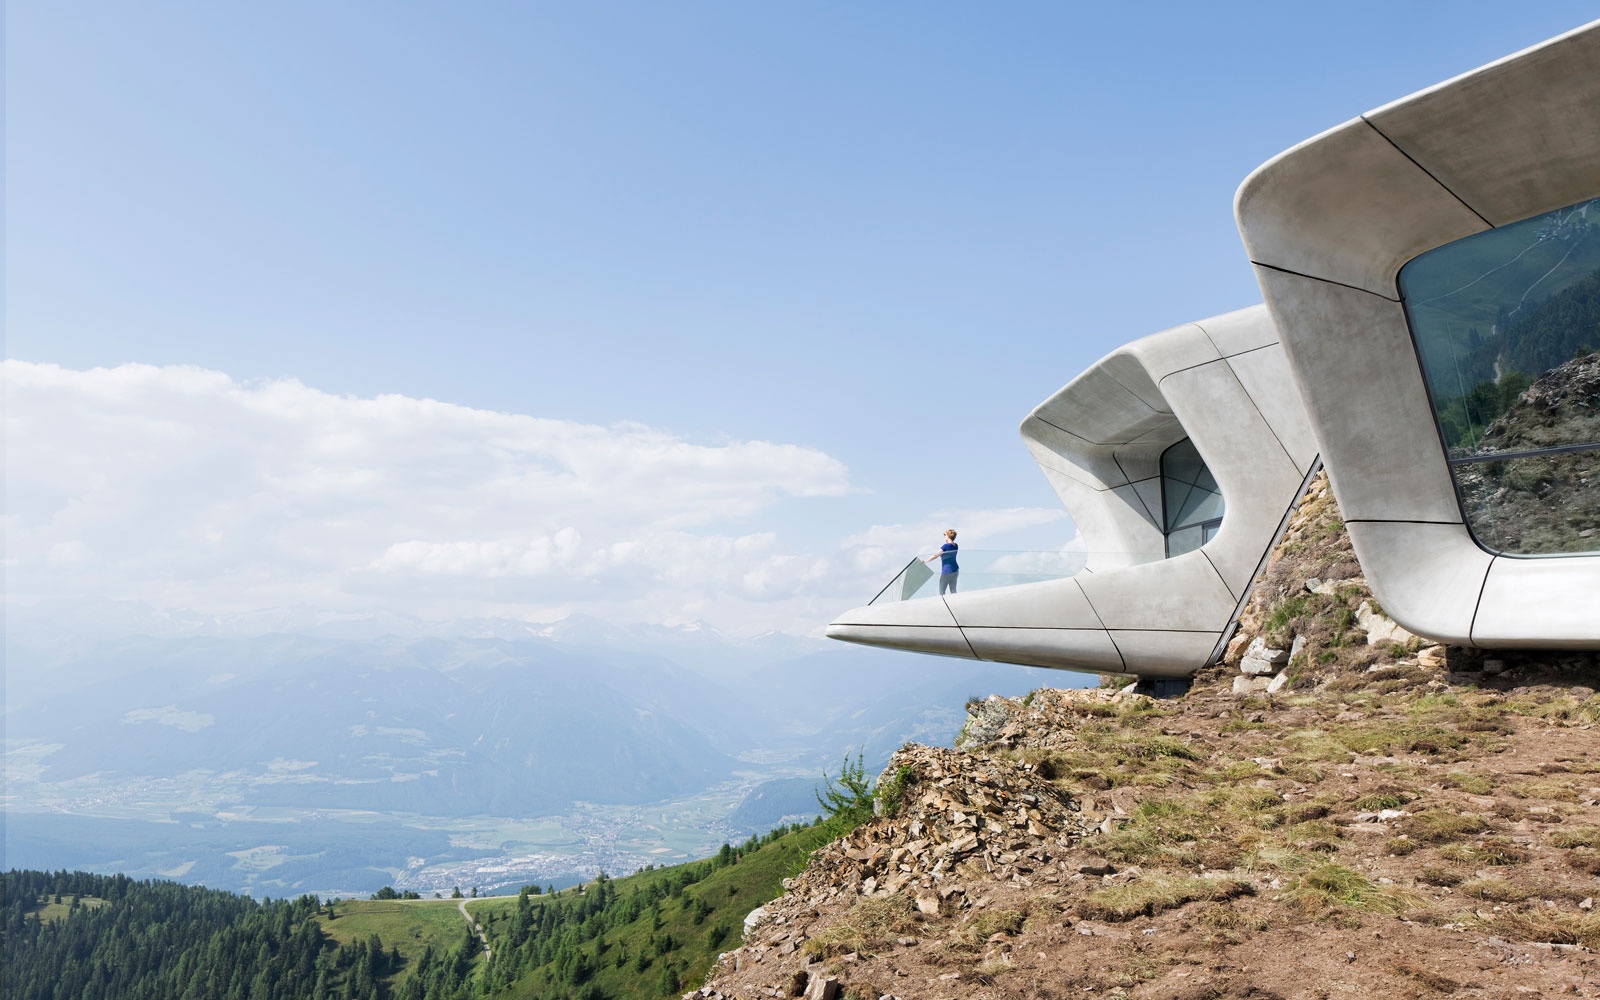 Now Open: Striking Modern Museum Buried in an Alpine Peak